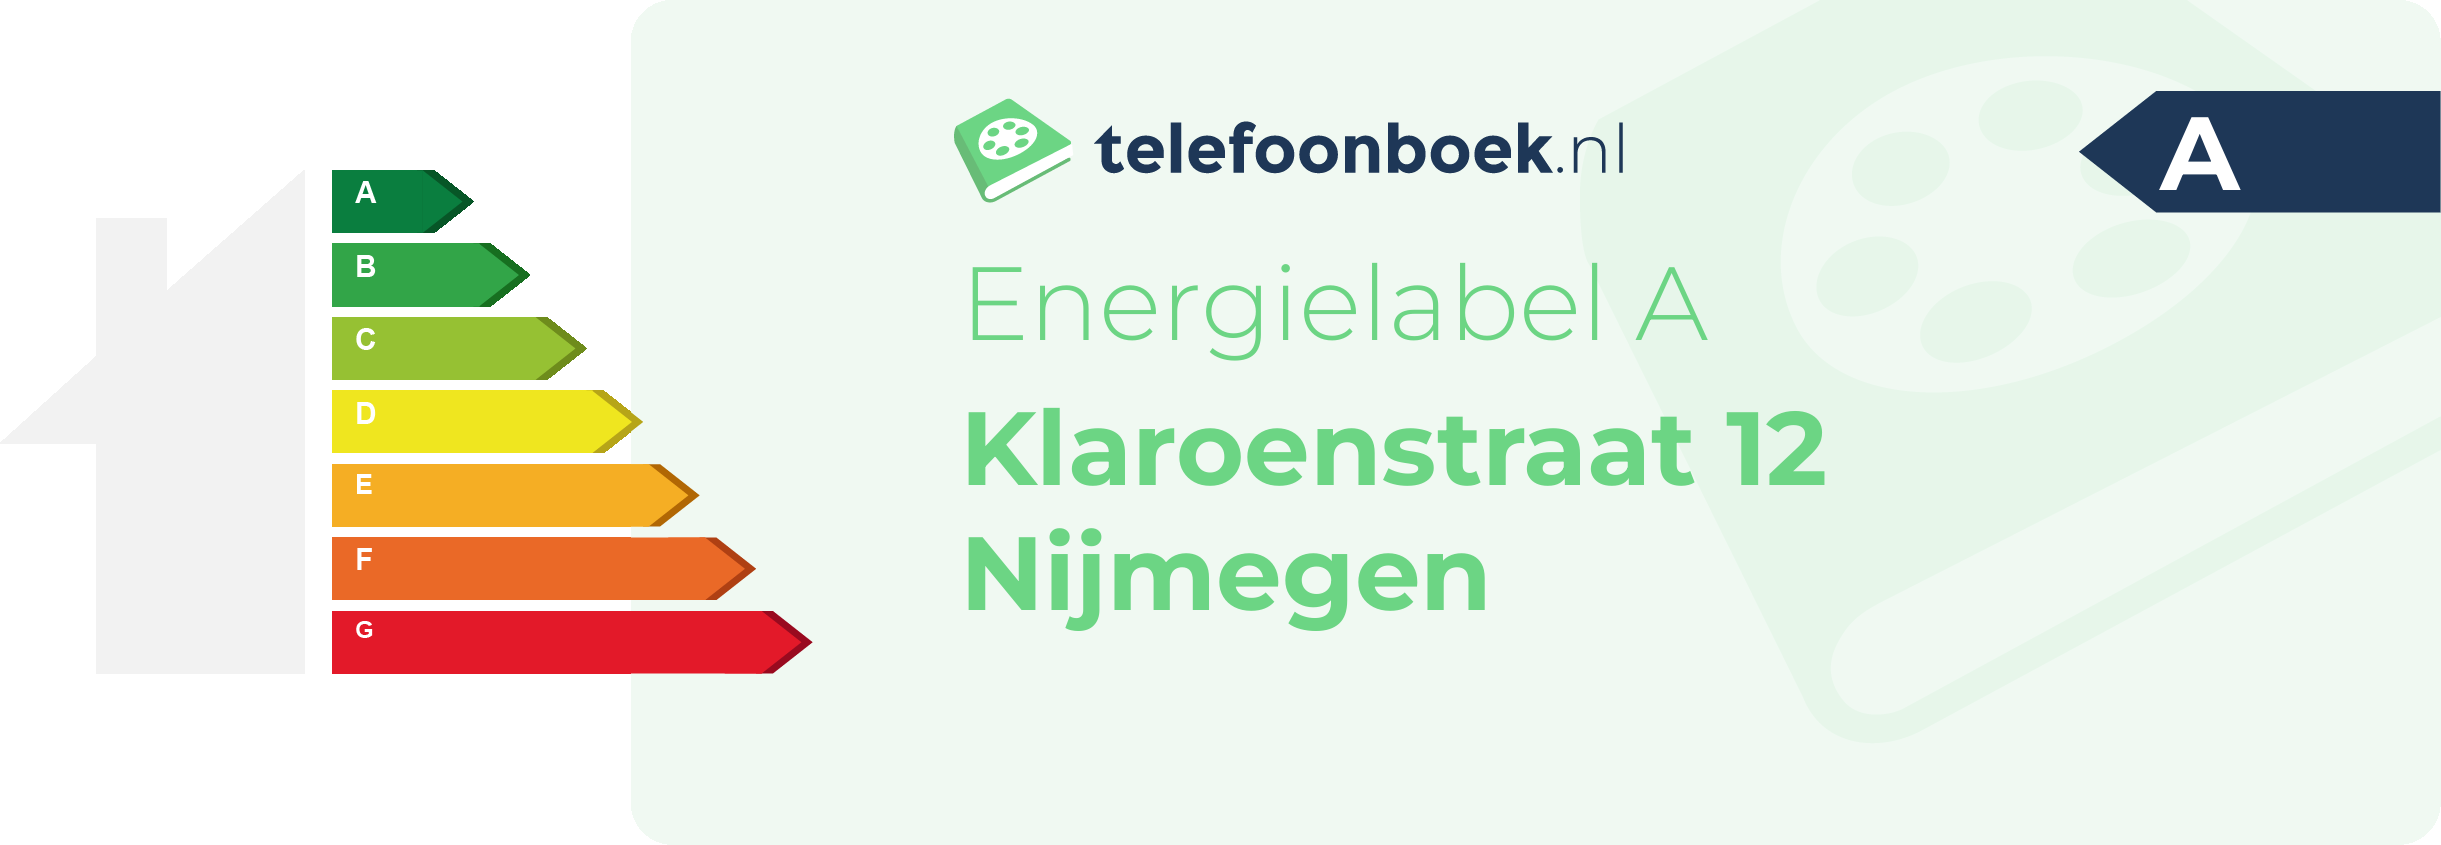 Energielabel Klaroenstraat 12 Nijmegen